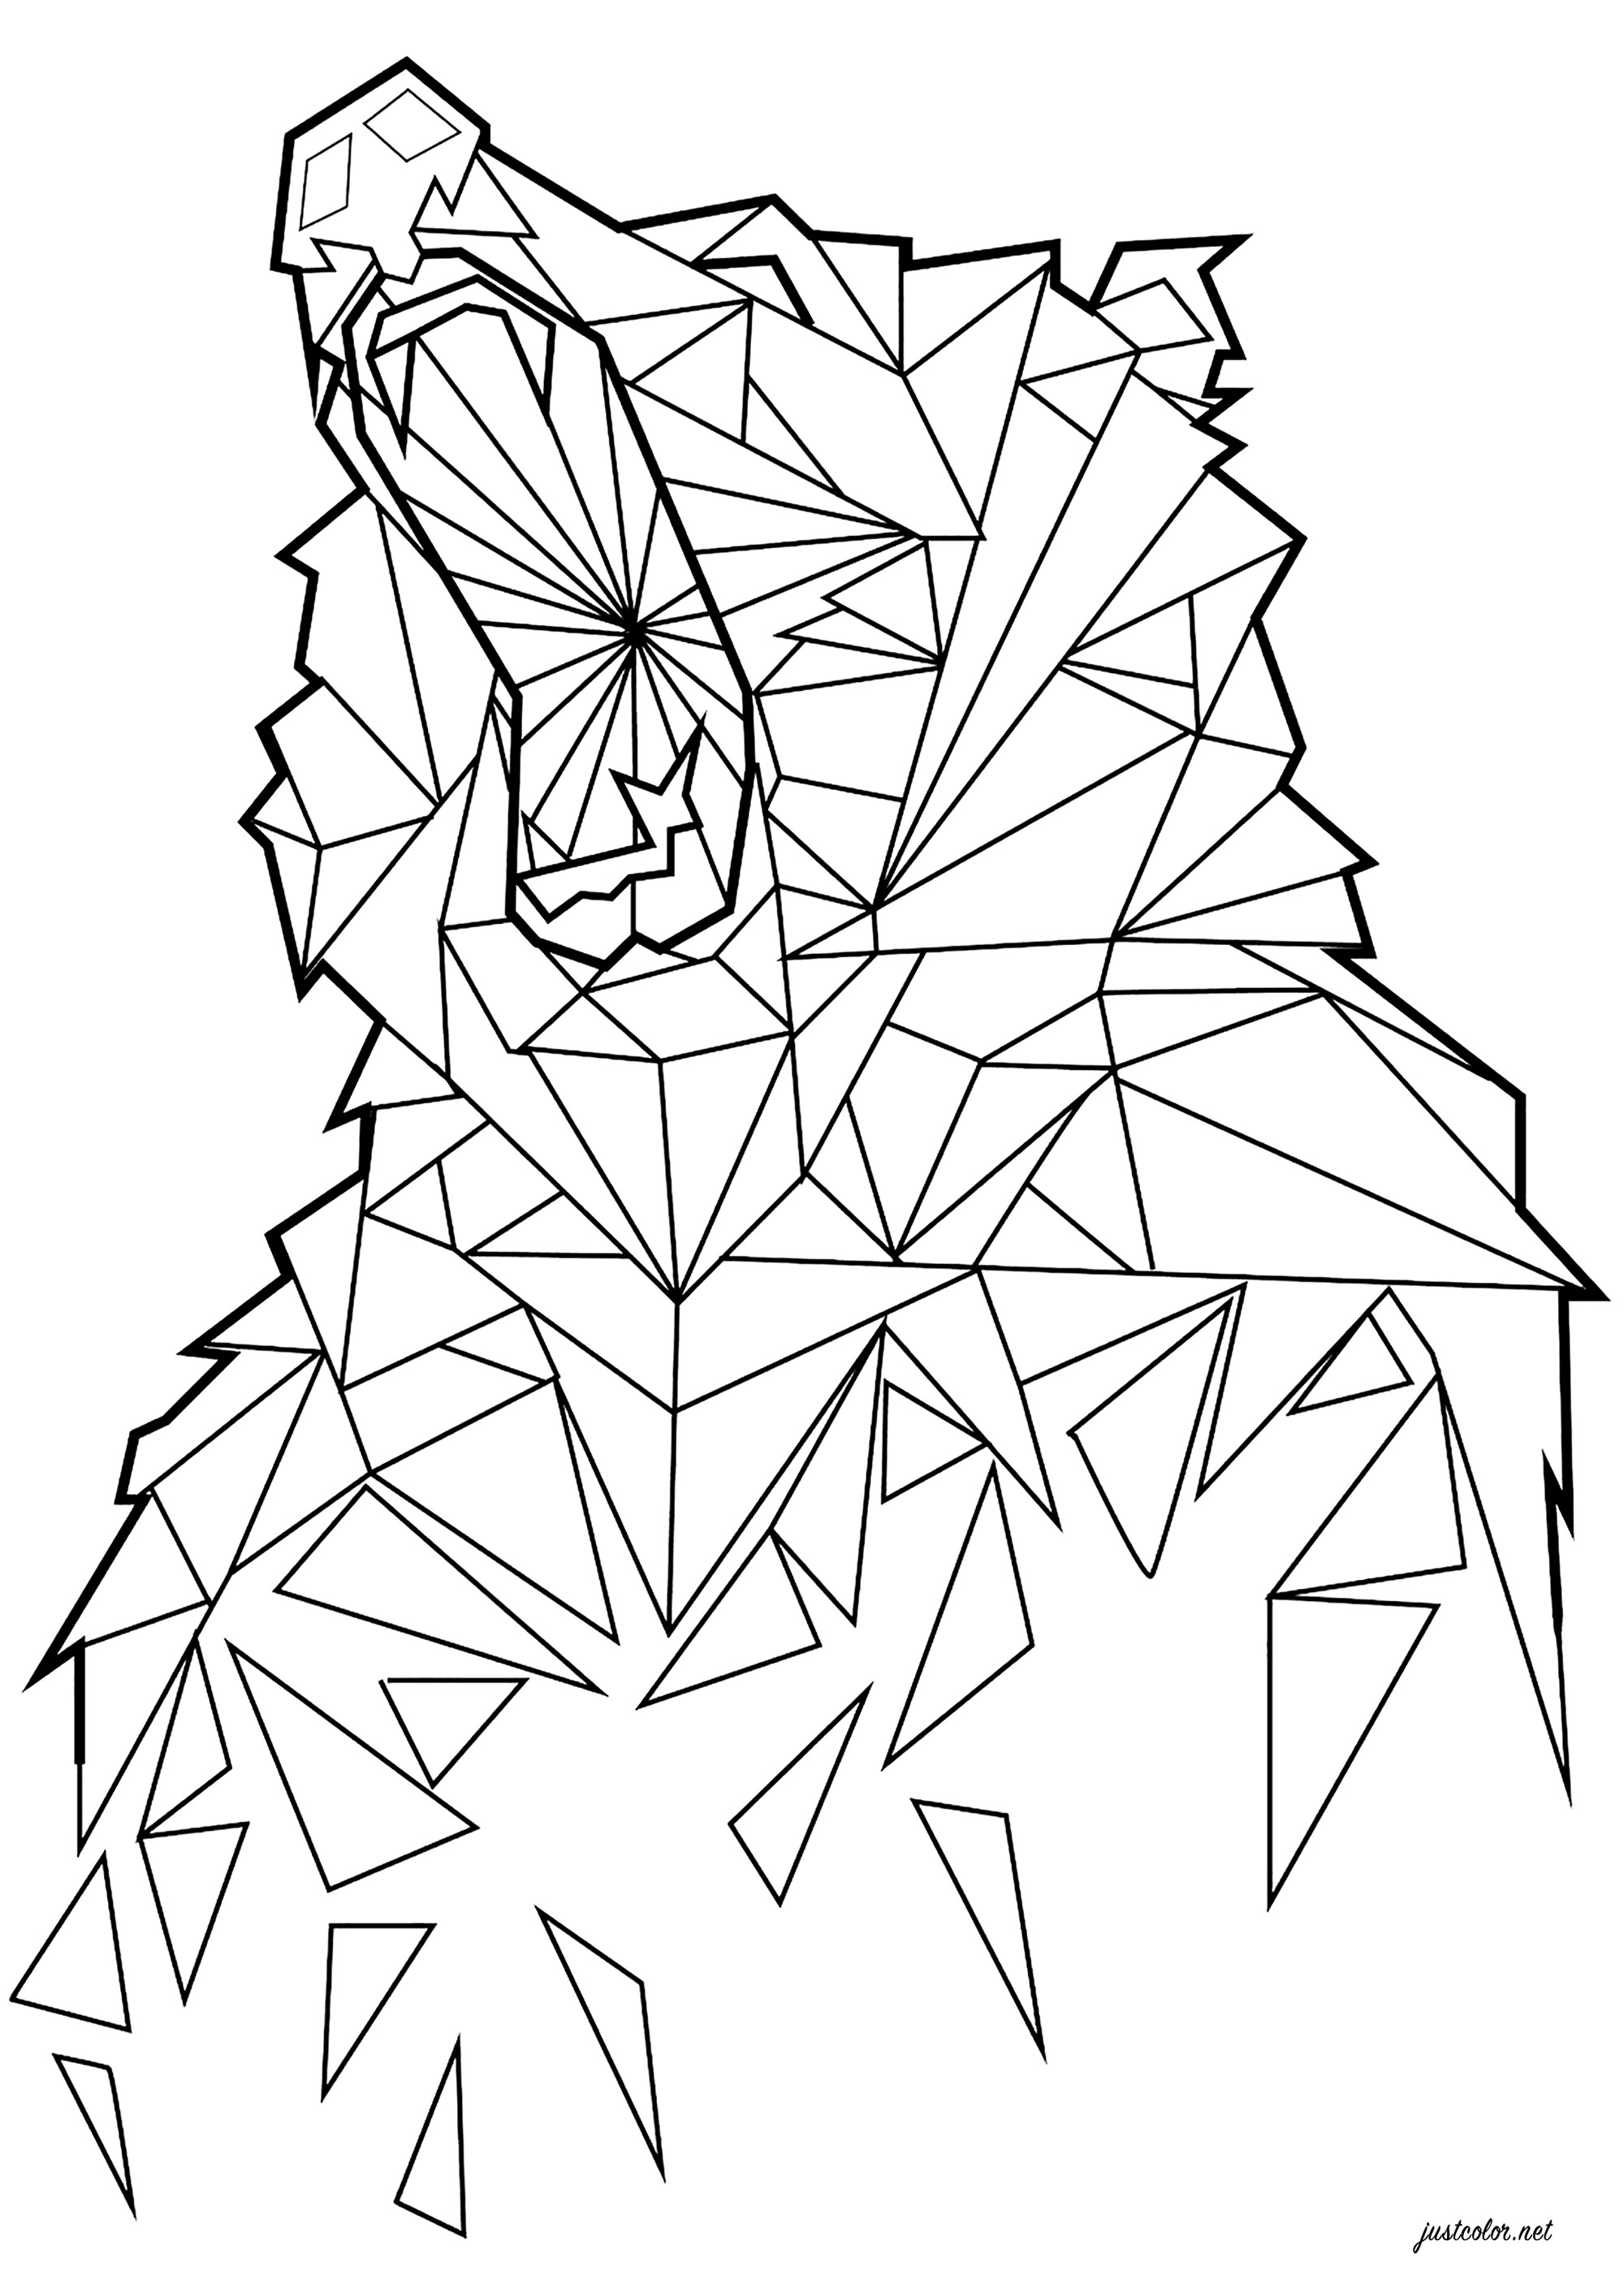 Oso aullador formado por triángulos, Artista : Esteban